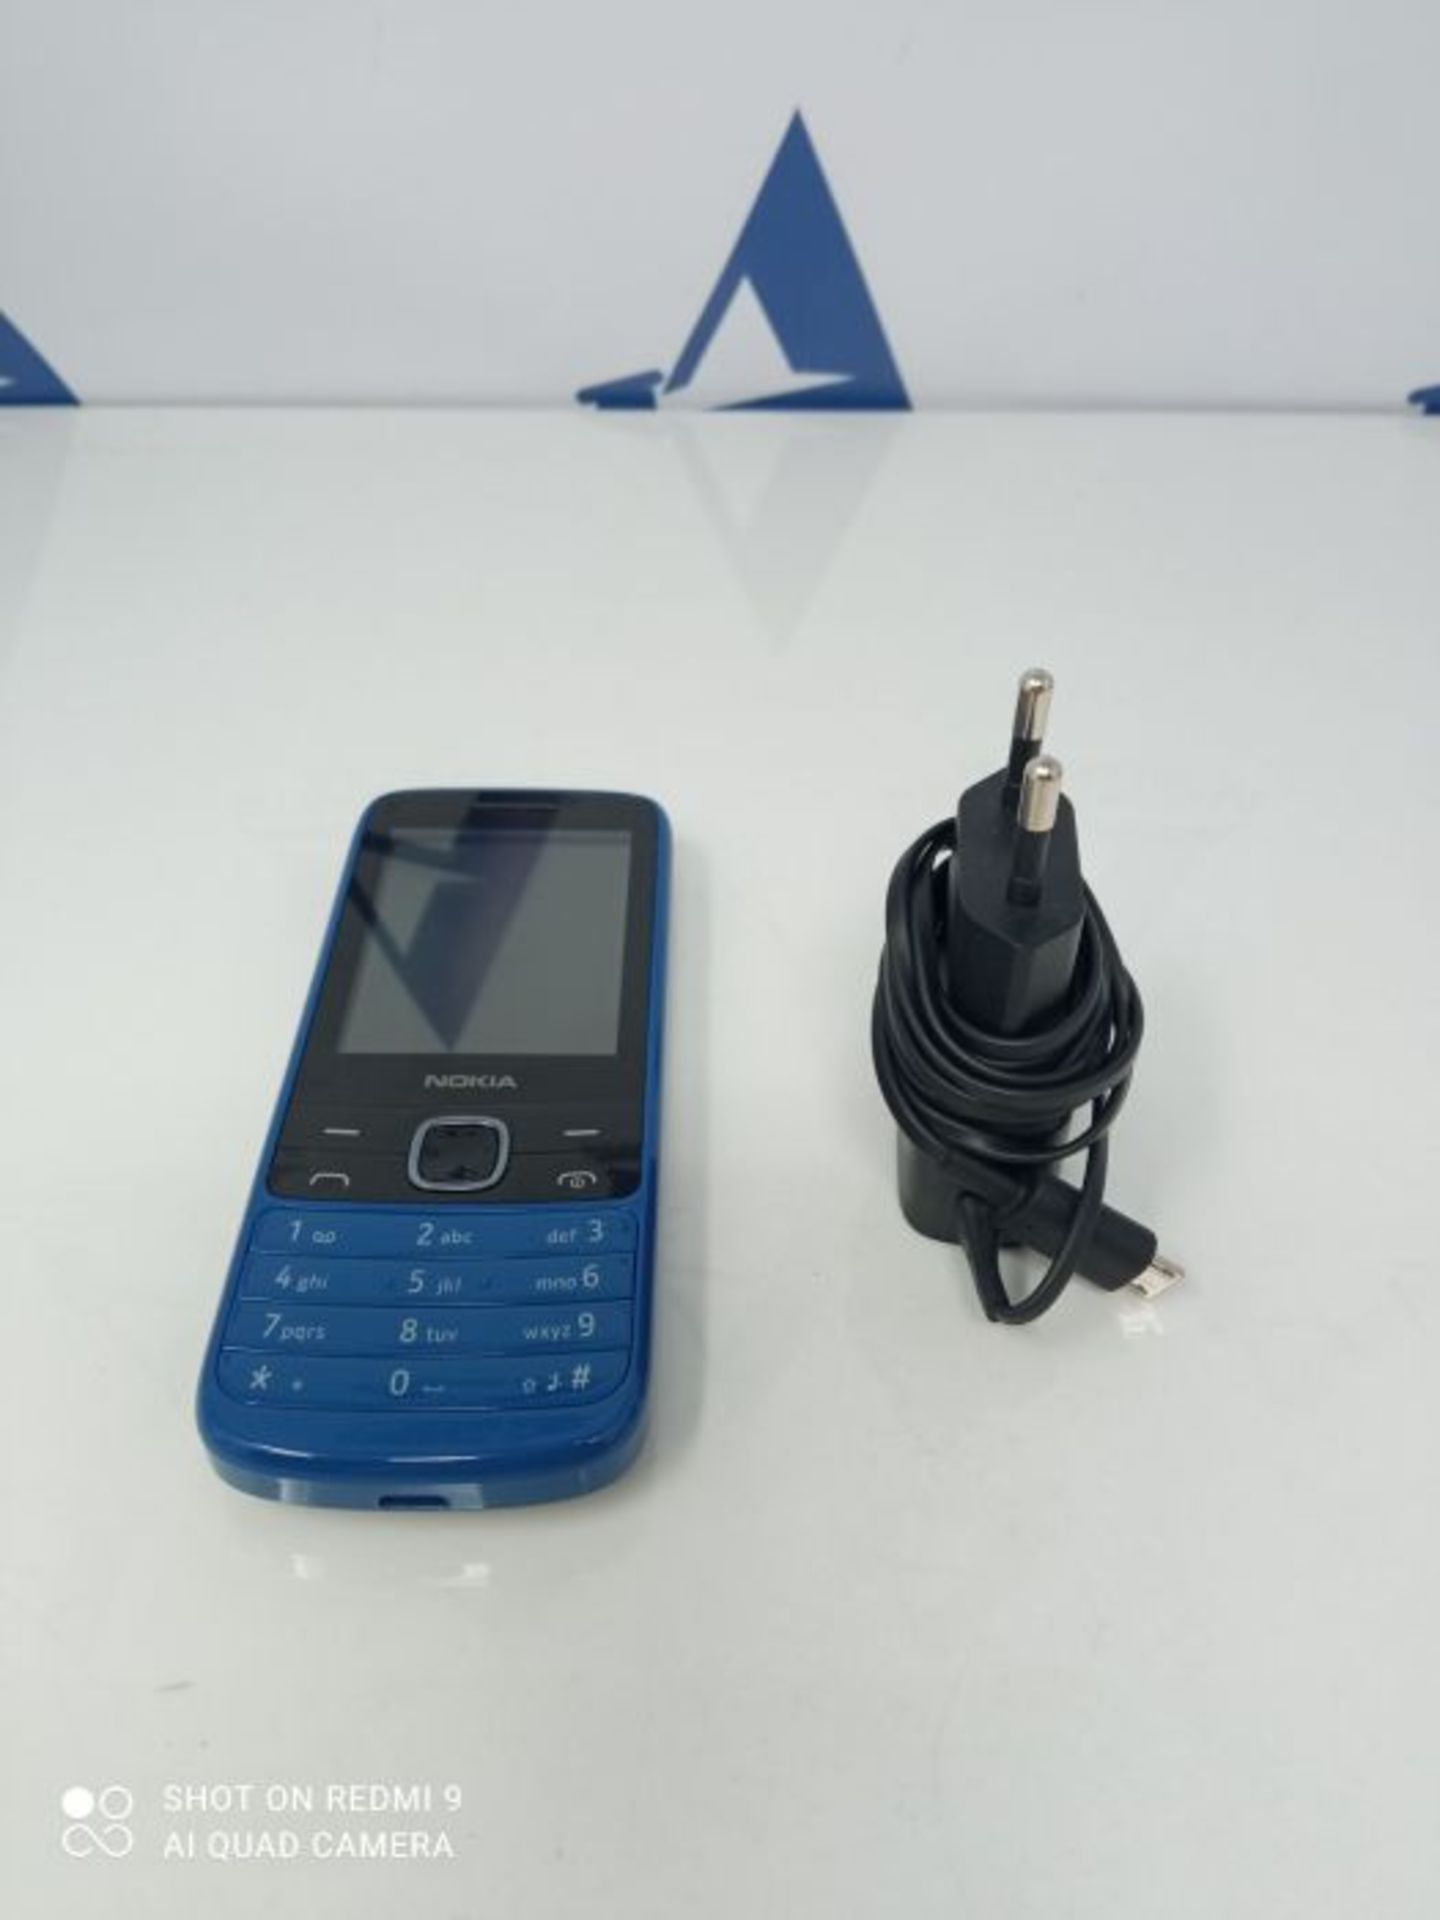 Nokia 225 blue EU - Image 2 of 2